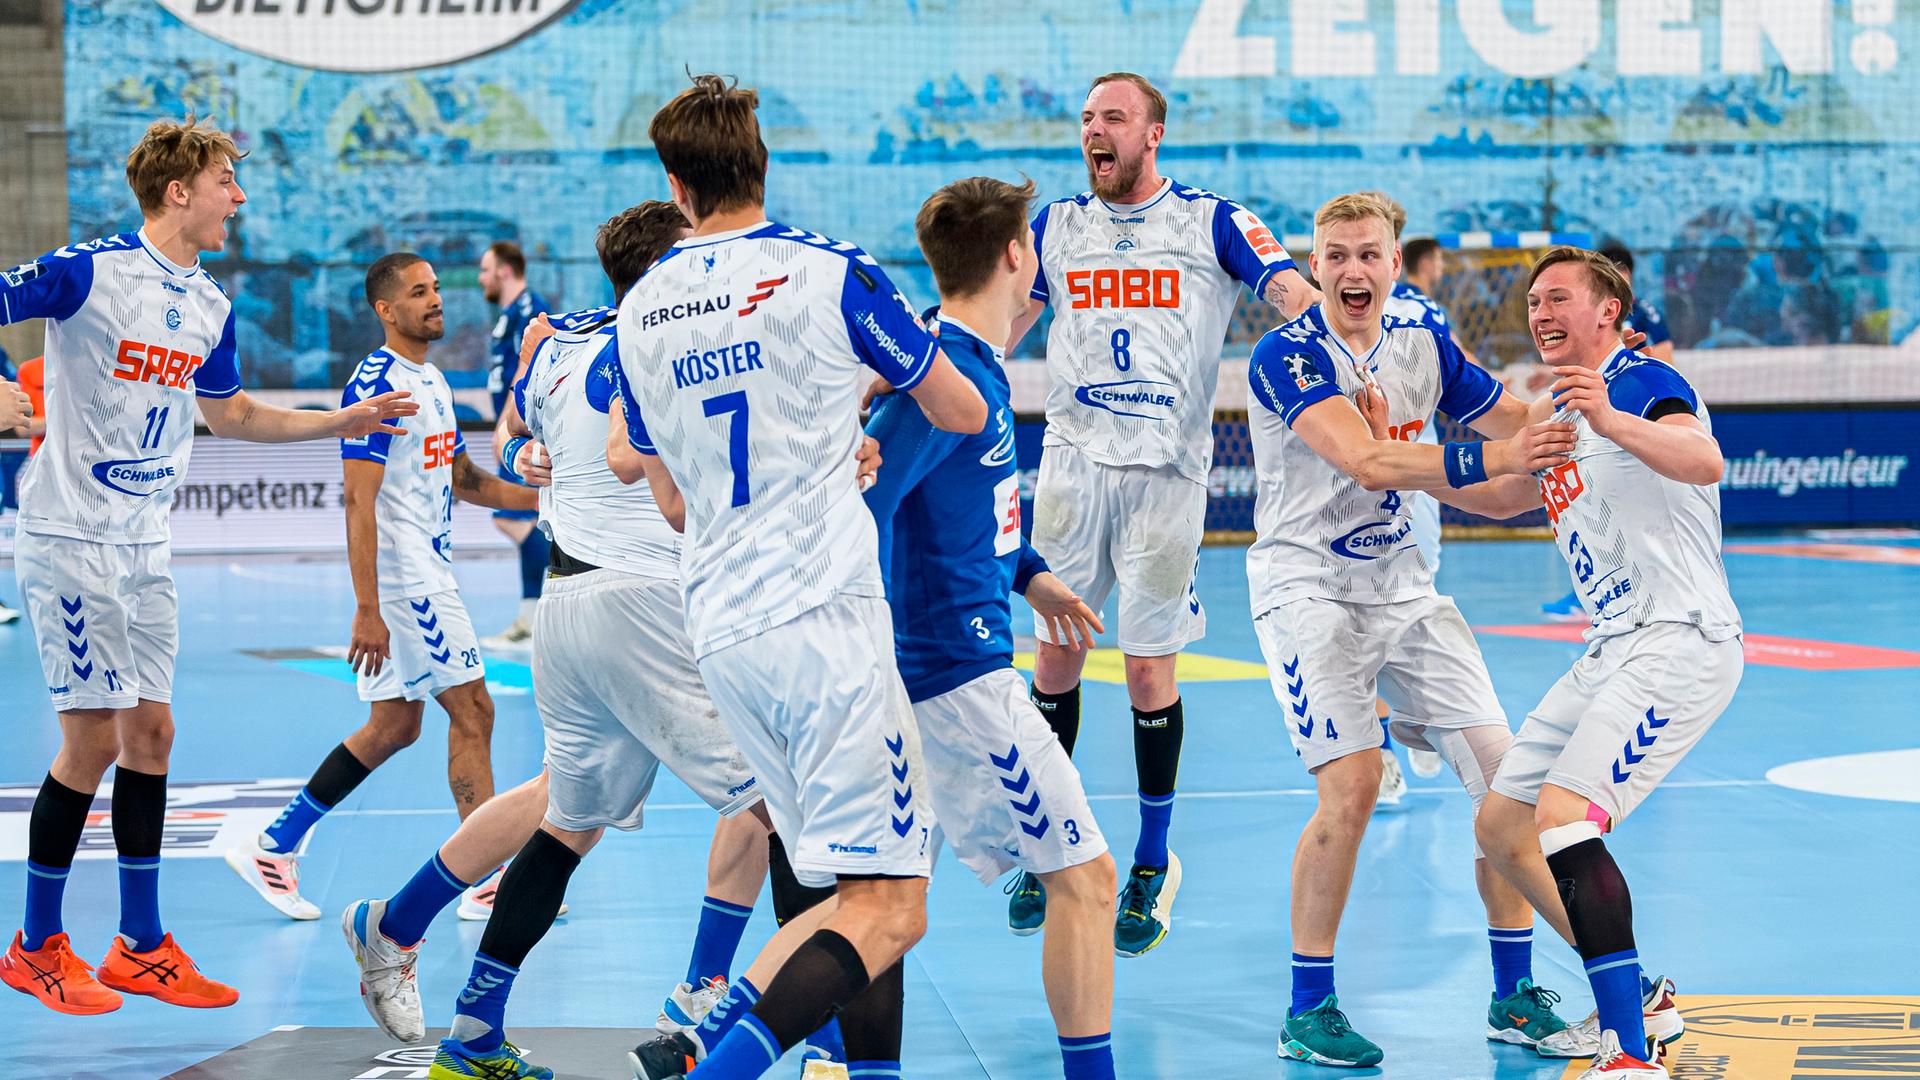 Die Handball-Mannschaft des VfL Gummersbach jubelt nach dem Spiel gegen SG BBM Bietigheim